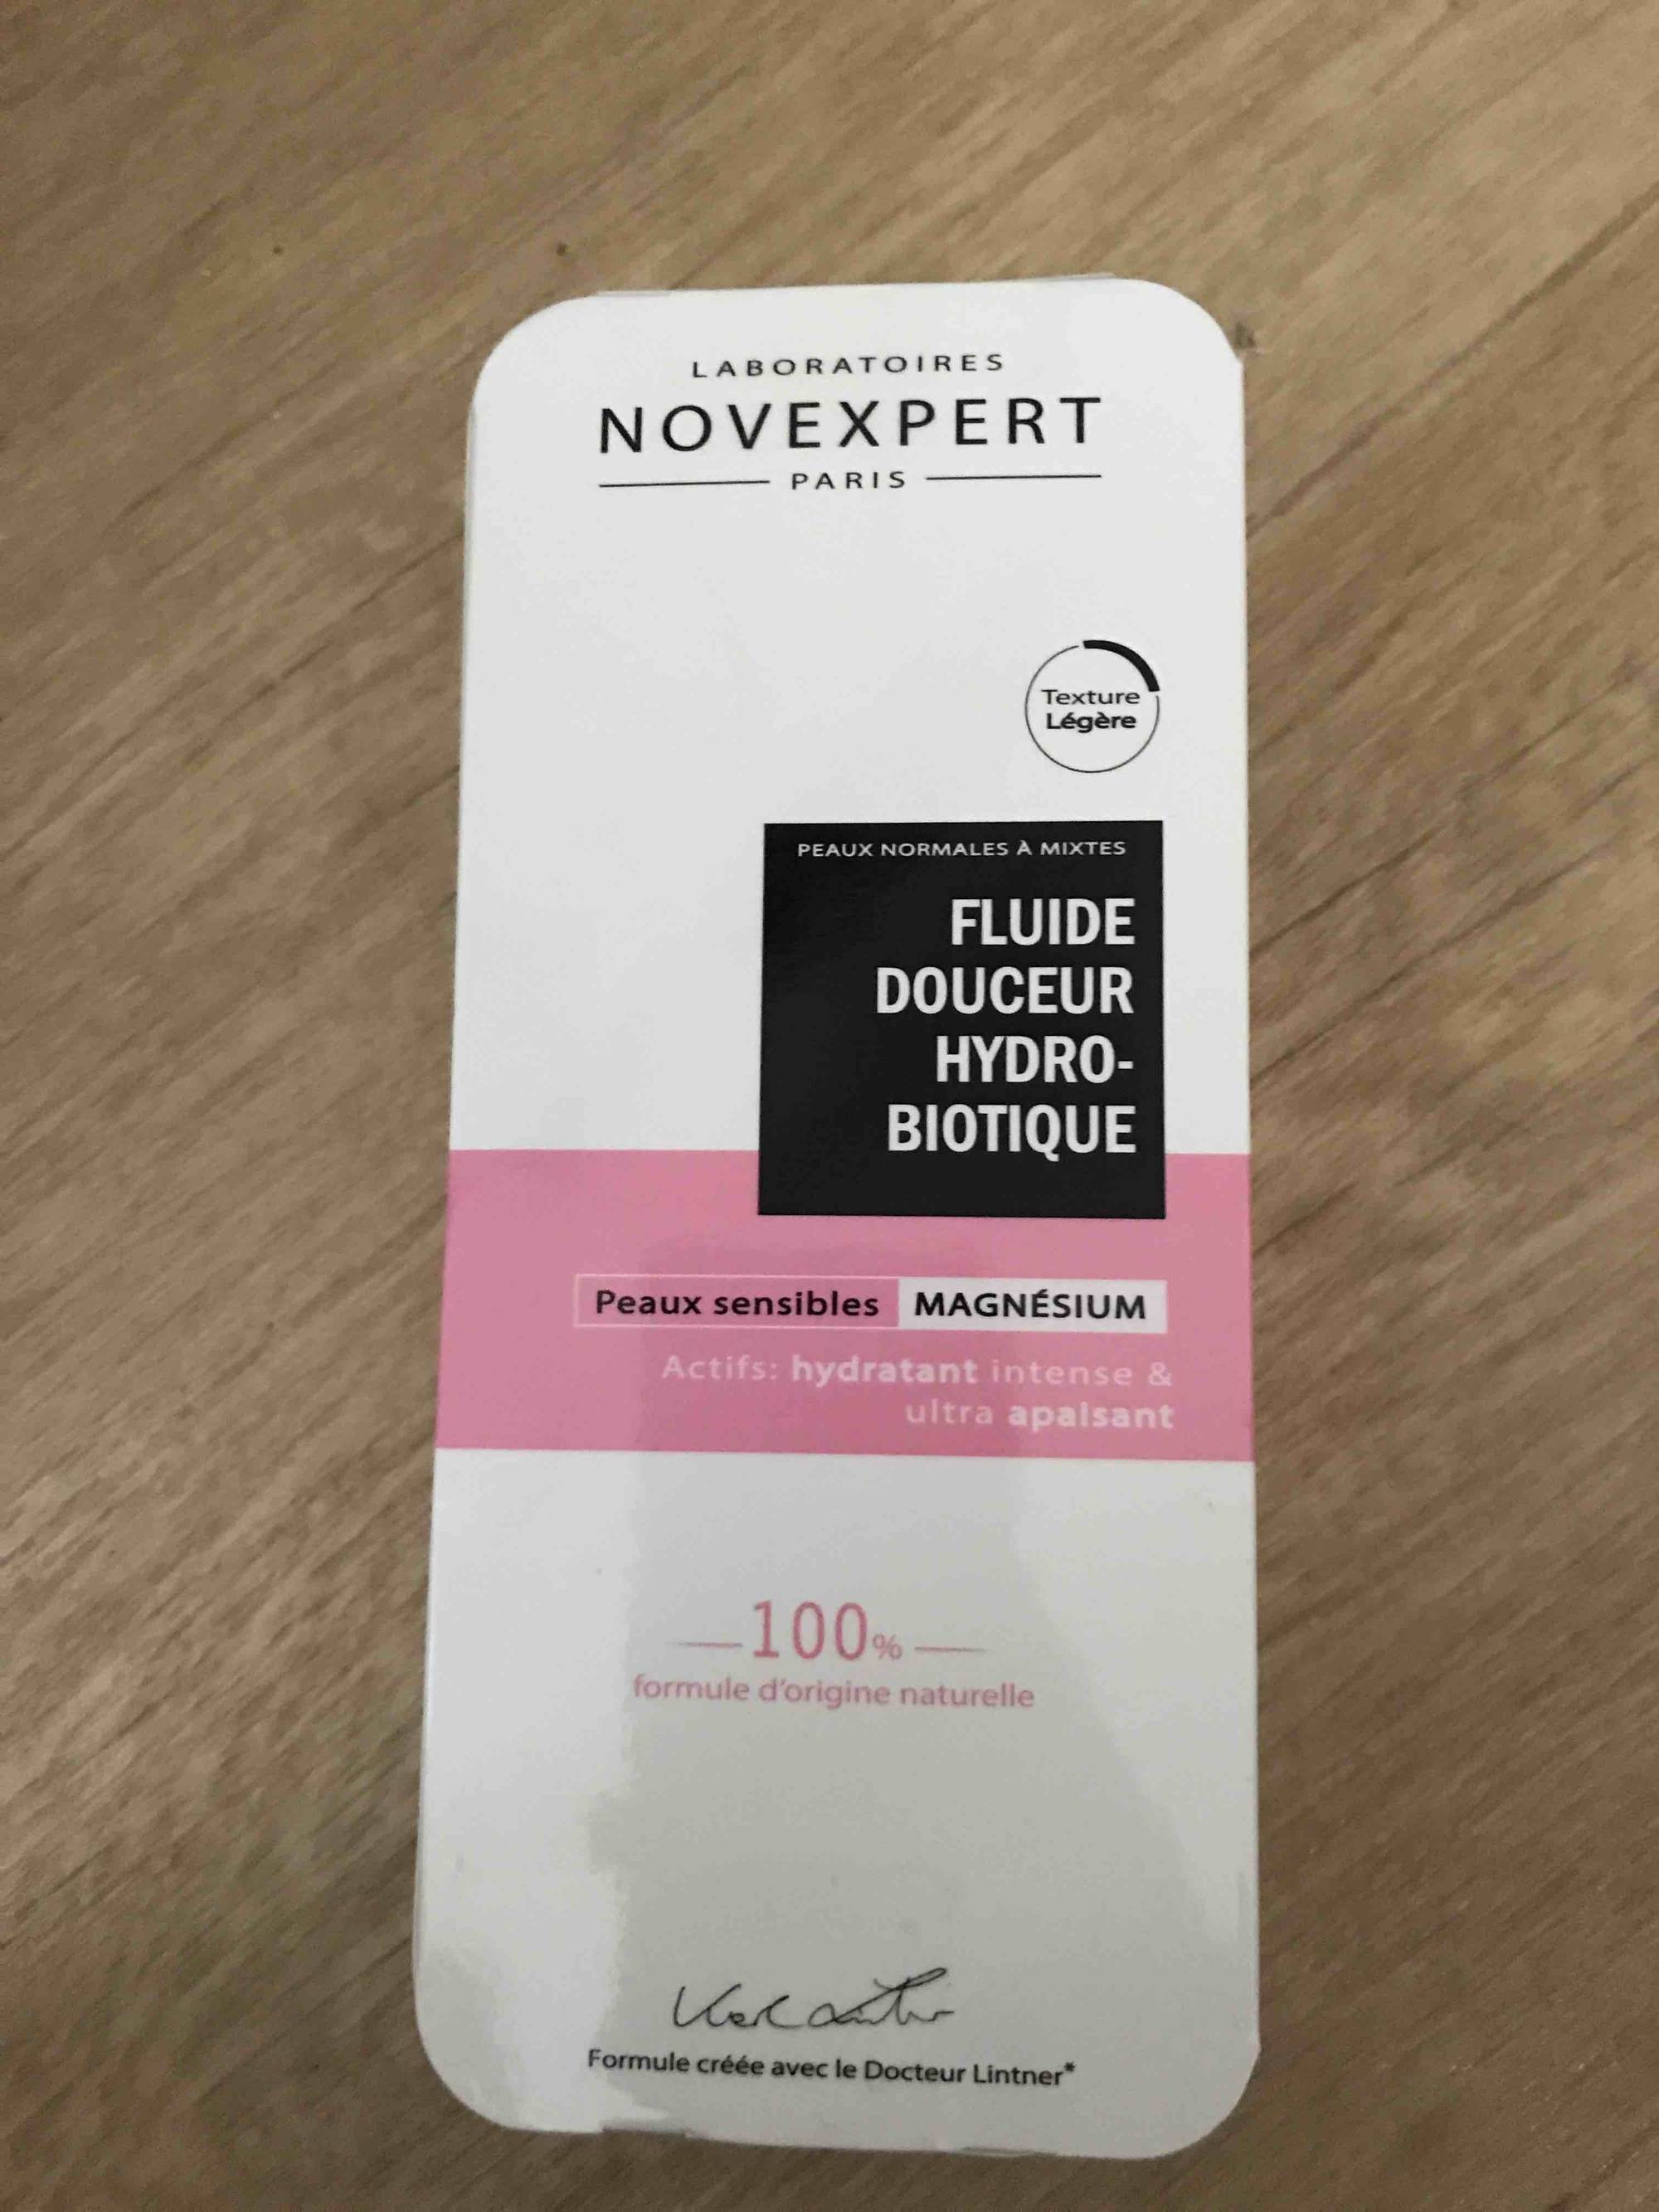 NOVEXPERT PARIS - Magnésium - Fluide douceur hydro-biotique